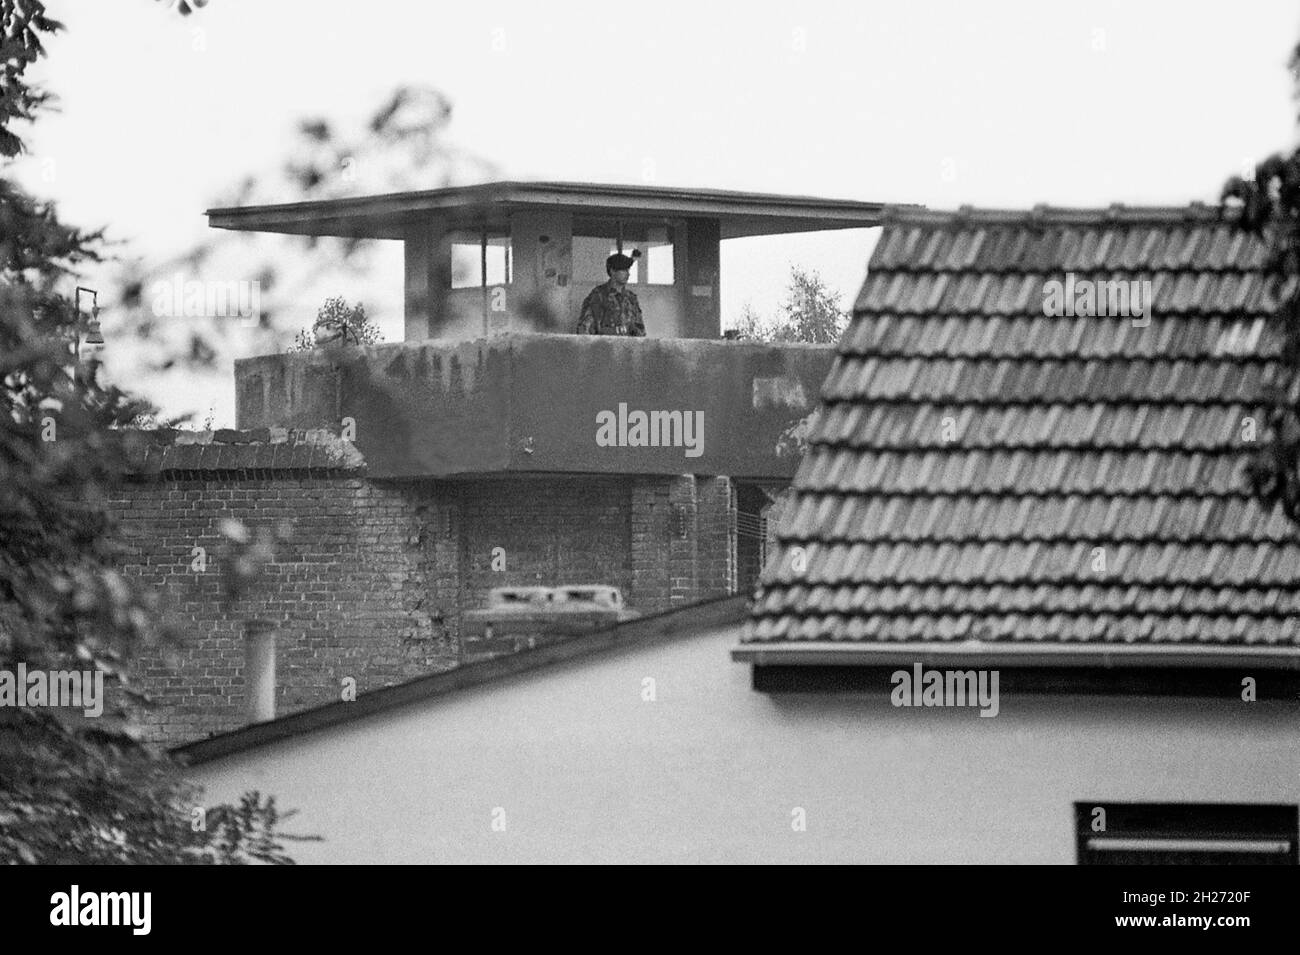 PRIGIONE DI SPANDAU Berlino Ovest Germania detenuta dopo la guerra sette leader nazisti condannati in processi di Nüremberg demoliti 1987 dopo la morte dell'ultima prigione di Rudolf Hess Foto Stock